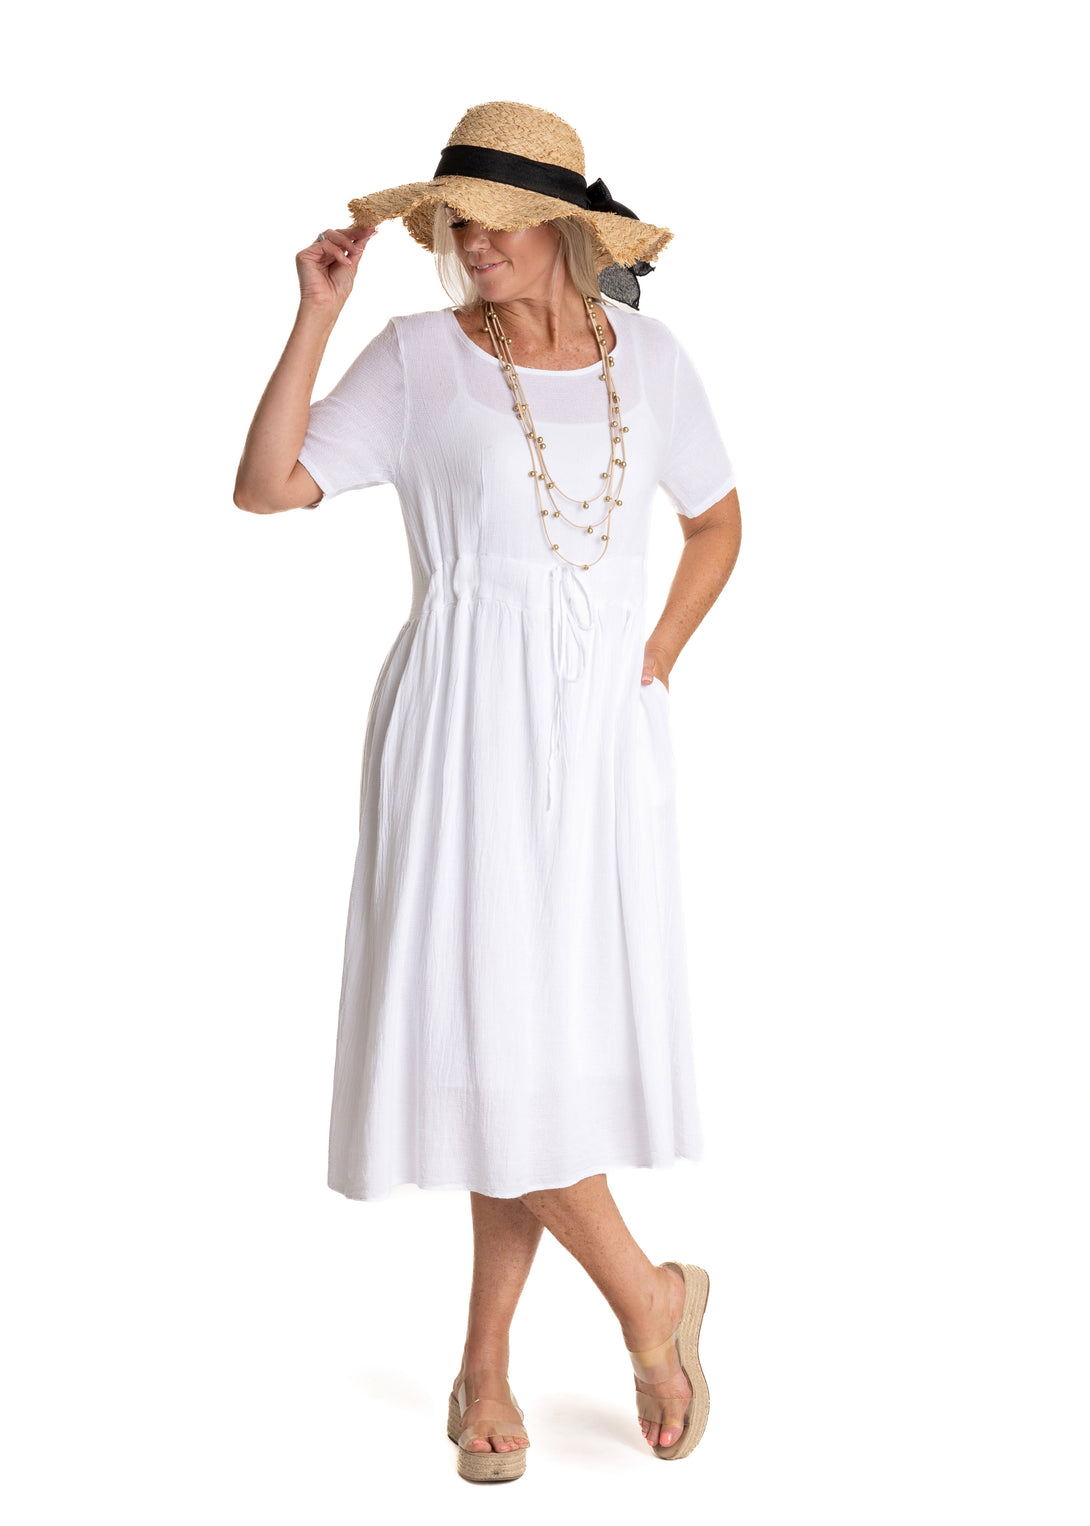 Josie Dress in White - Imagine Fashion